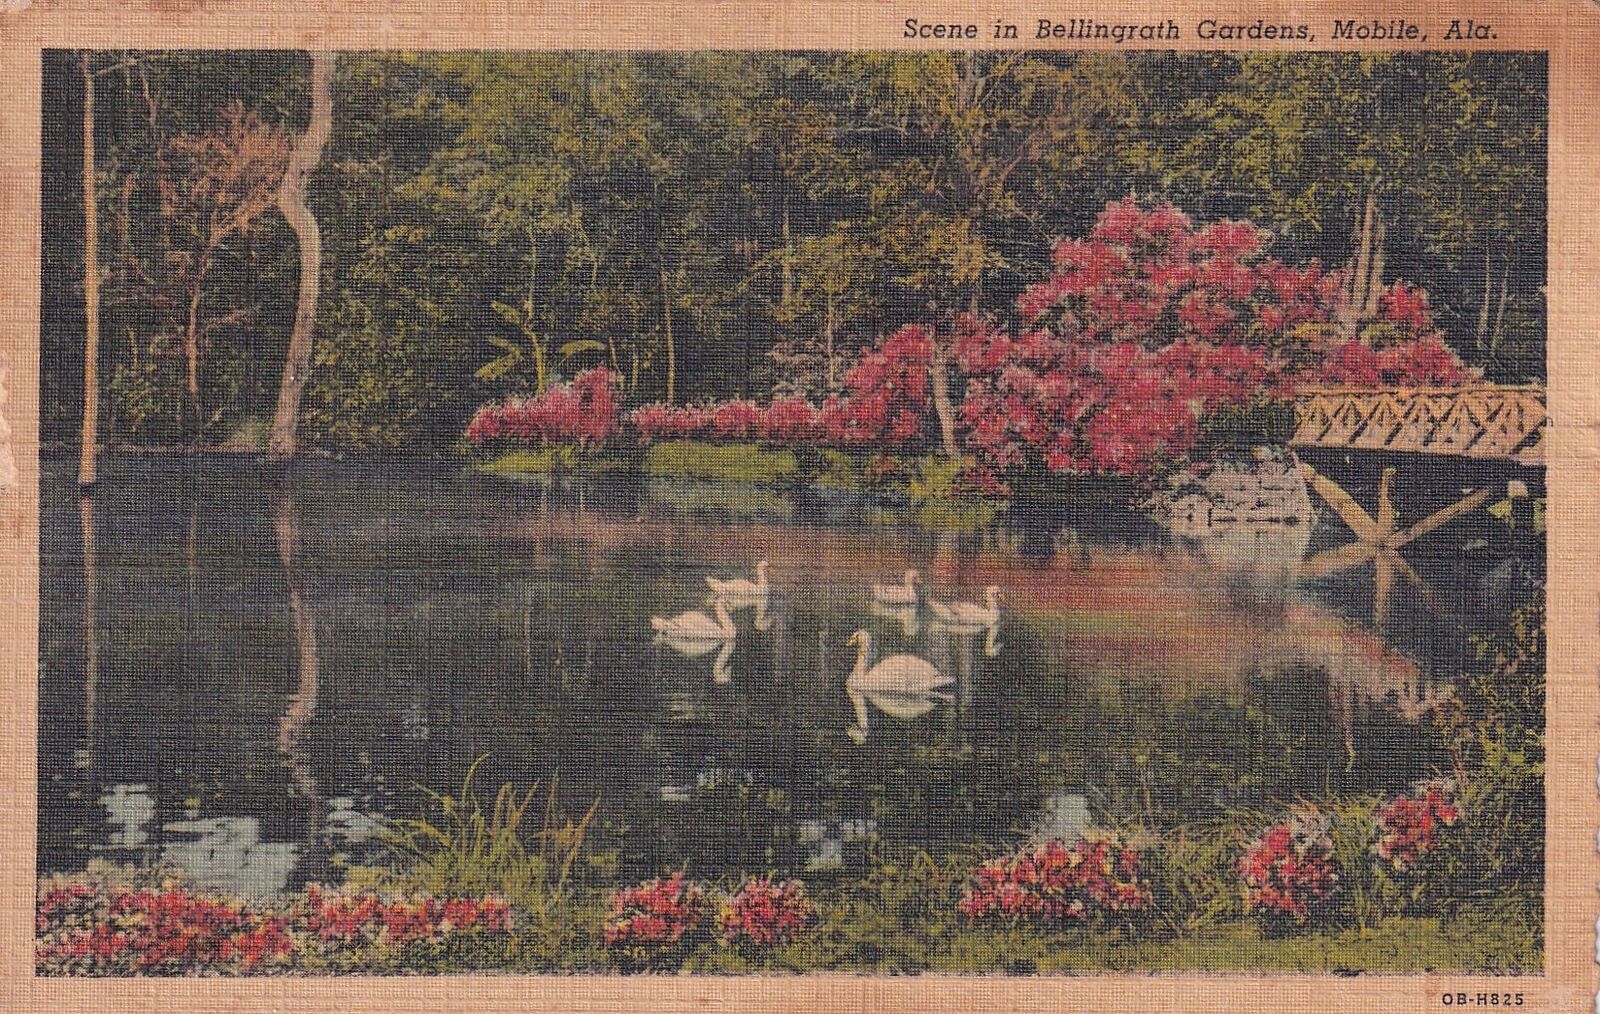 Mobile AL Alabama Bellingrath Gardens 1948 Postcard D56